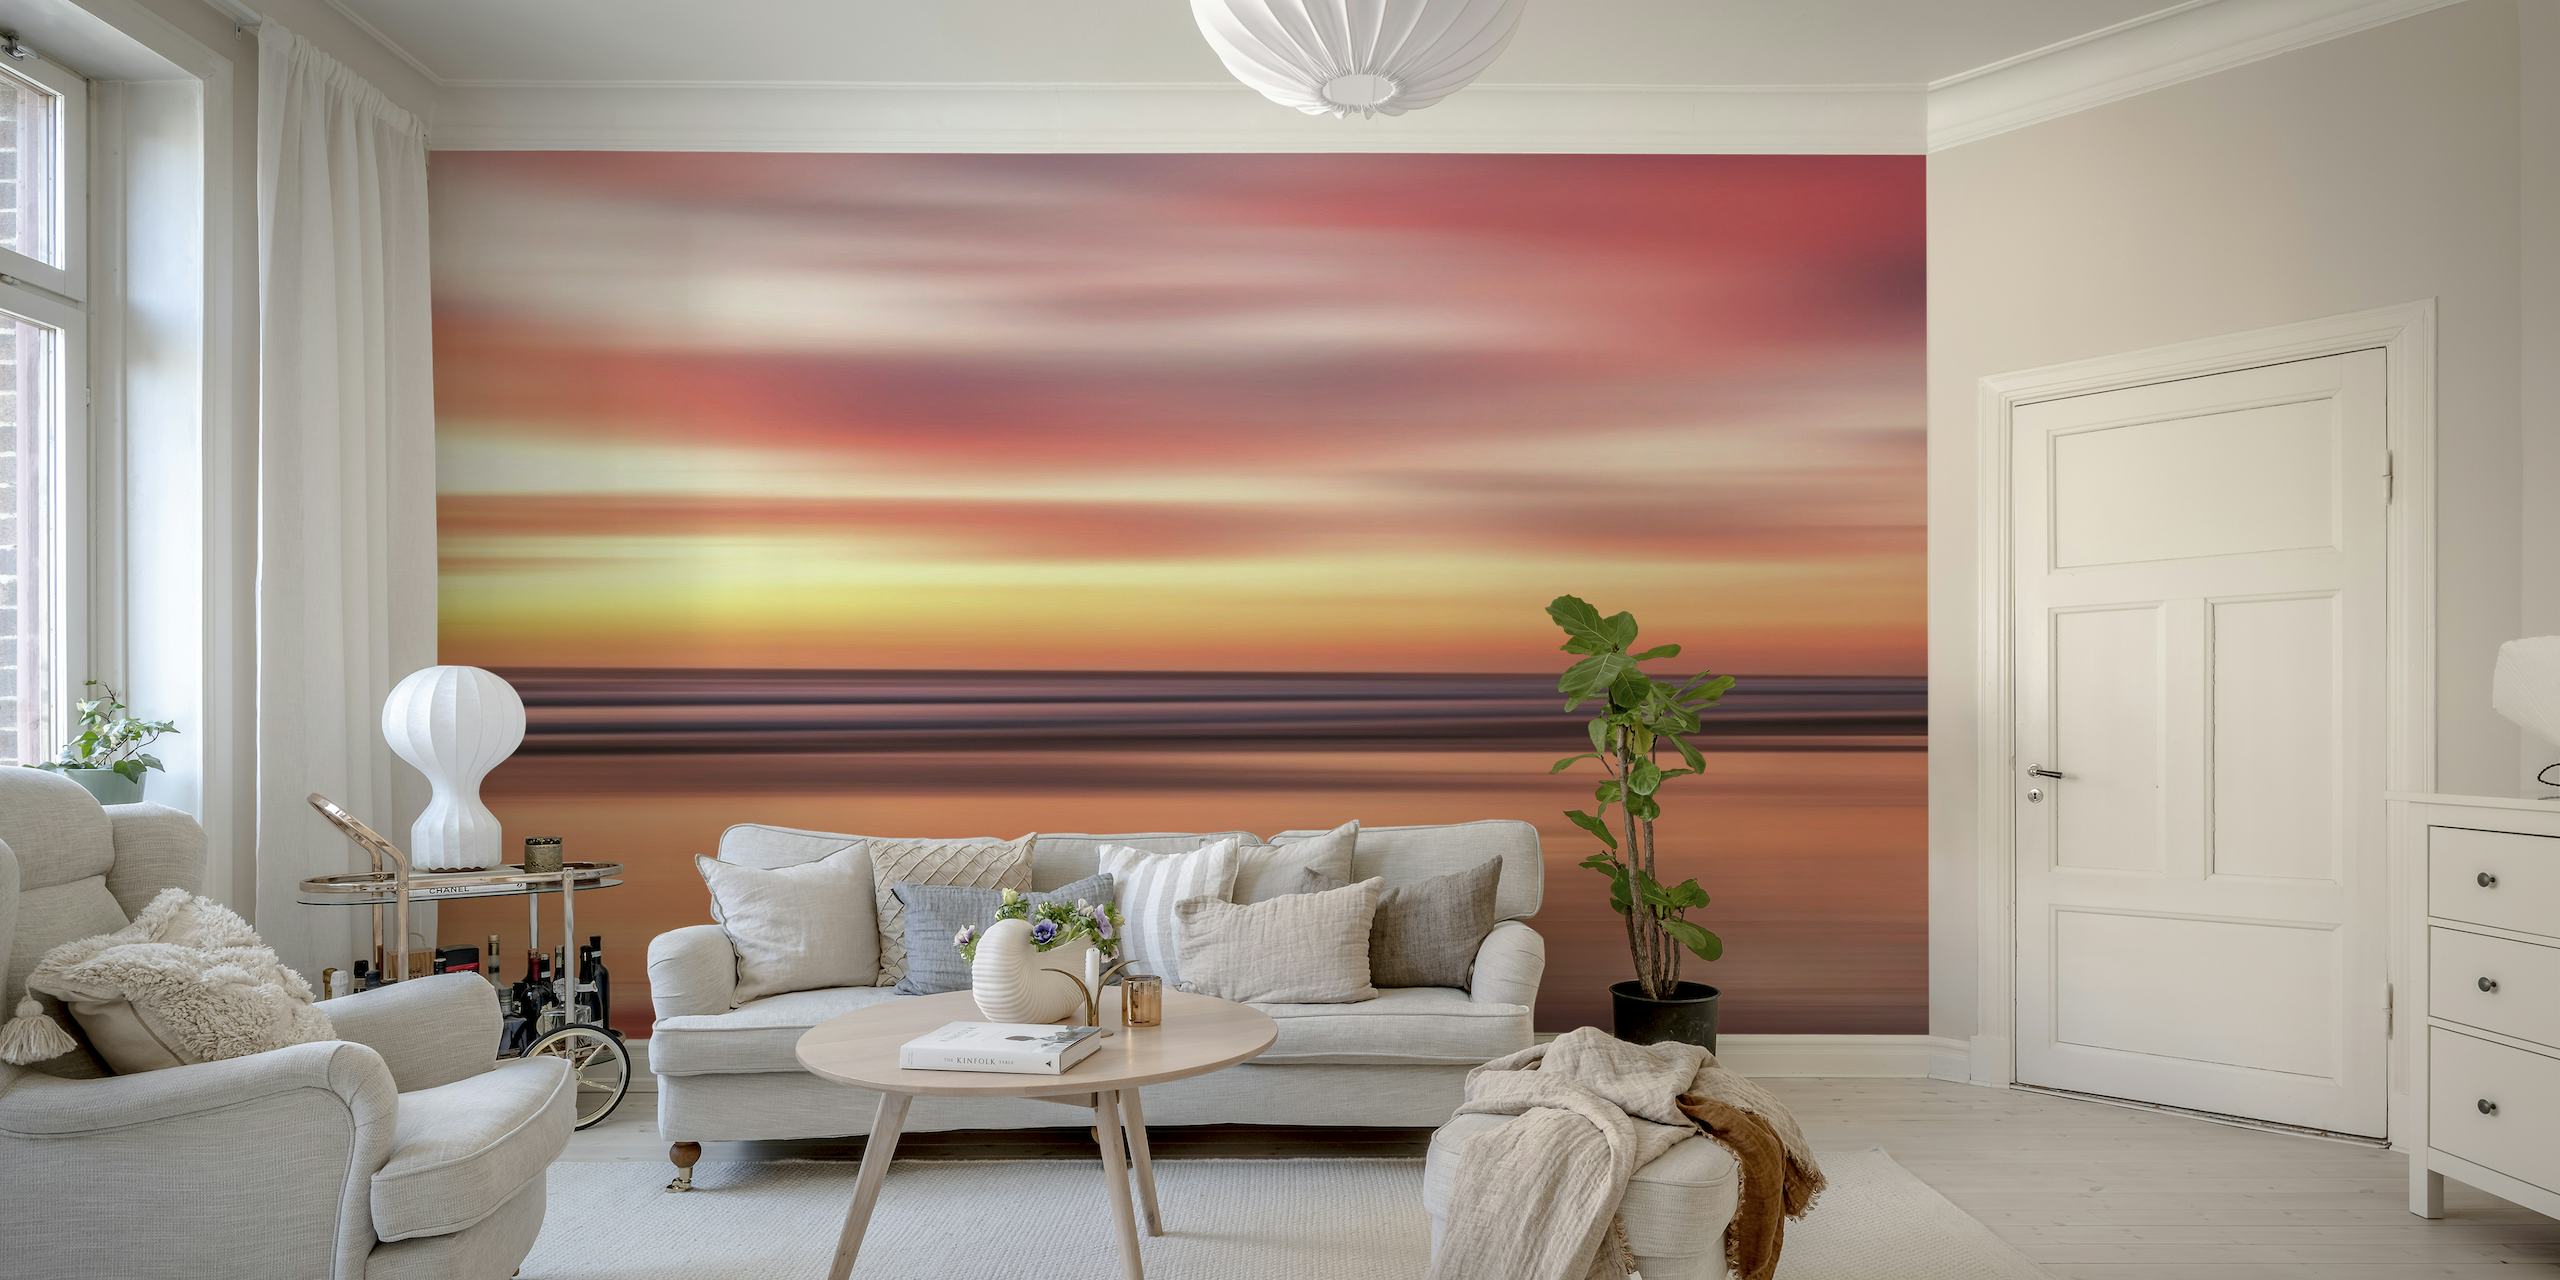 Papier peint Sunset Summer 9 avec des teintes rose vif et orange se reflétant sur les eaux calmes